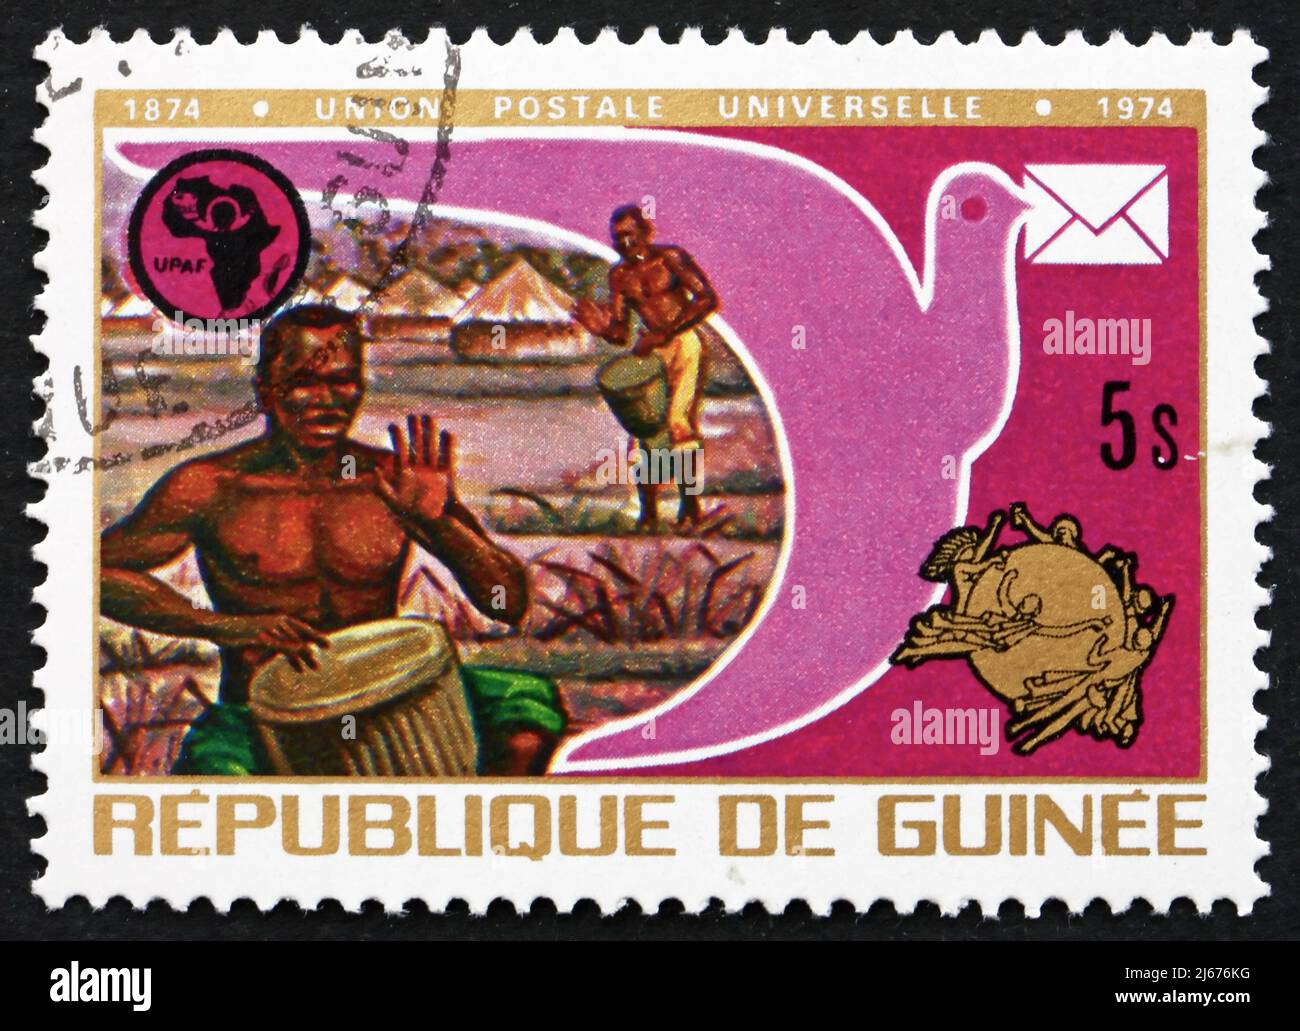 GUINEA - CIRCA 1974: Un francobollo stampato in Guinea mostra batteristi, piccione, UPAF e UPU emblemi, Centenario dell'Unione postale universale, circa 1974 Foto Stock